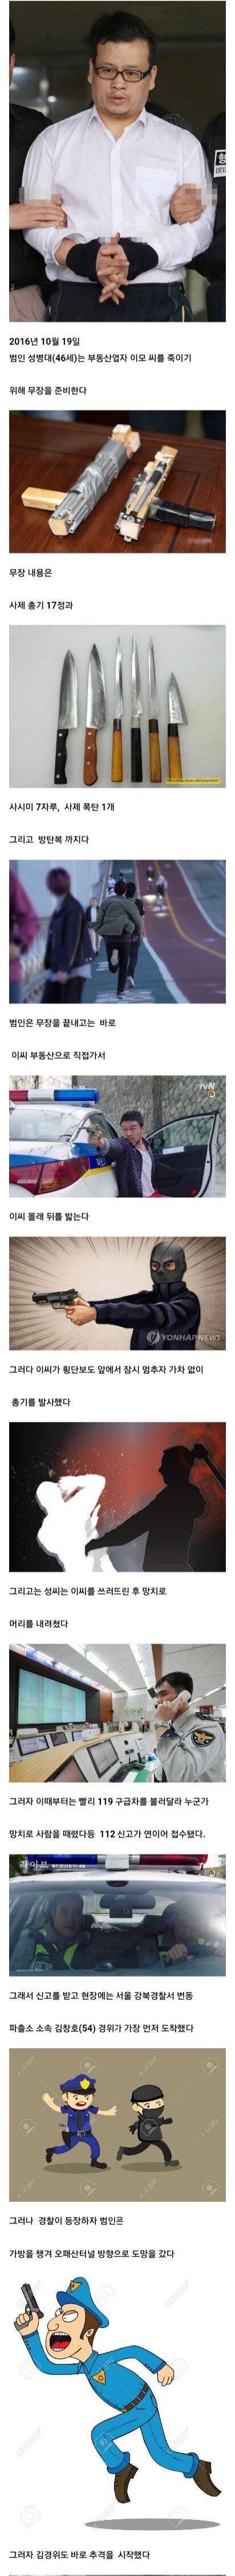 [스압] 대한민국 최악의 민간인 총기사건.mp4